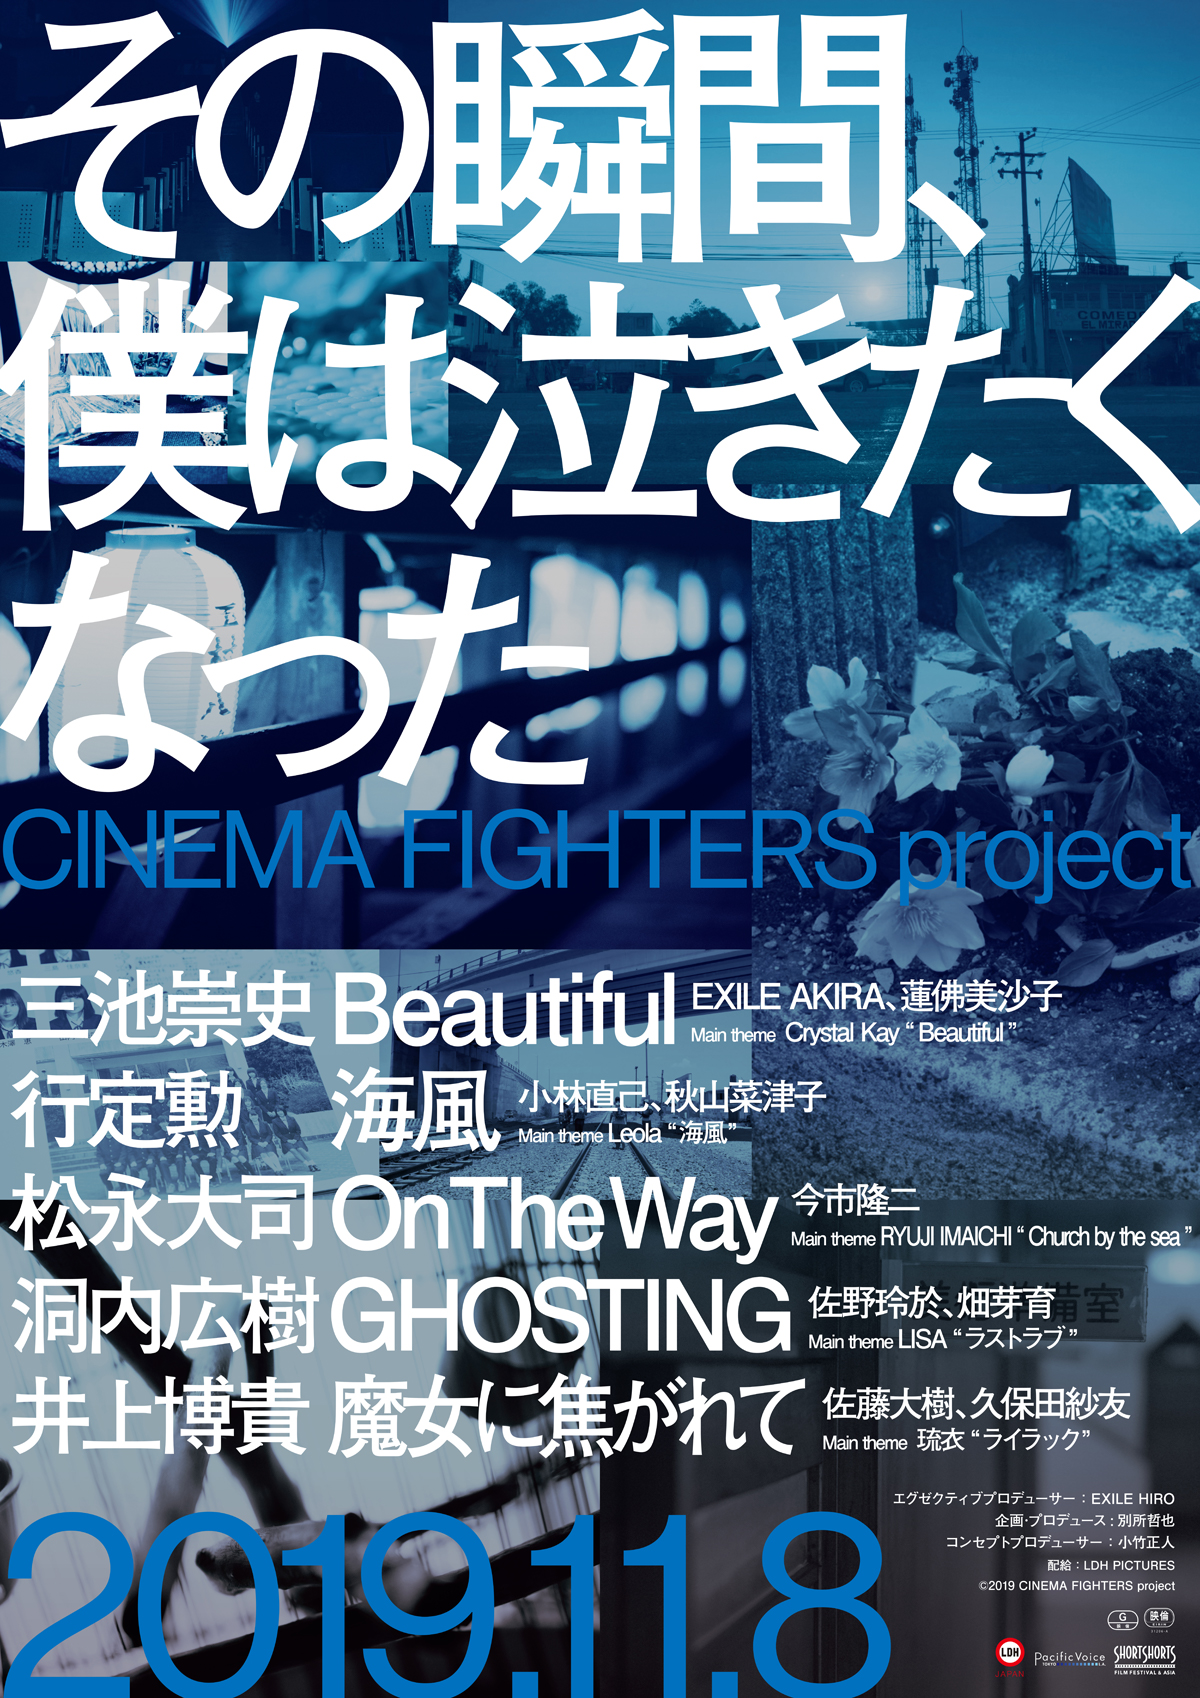 その瞬間、僕は泣きたくなった－CINEMA FIGHTERS project－の画像